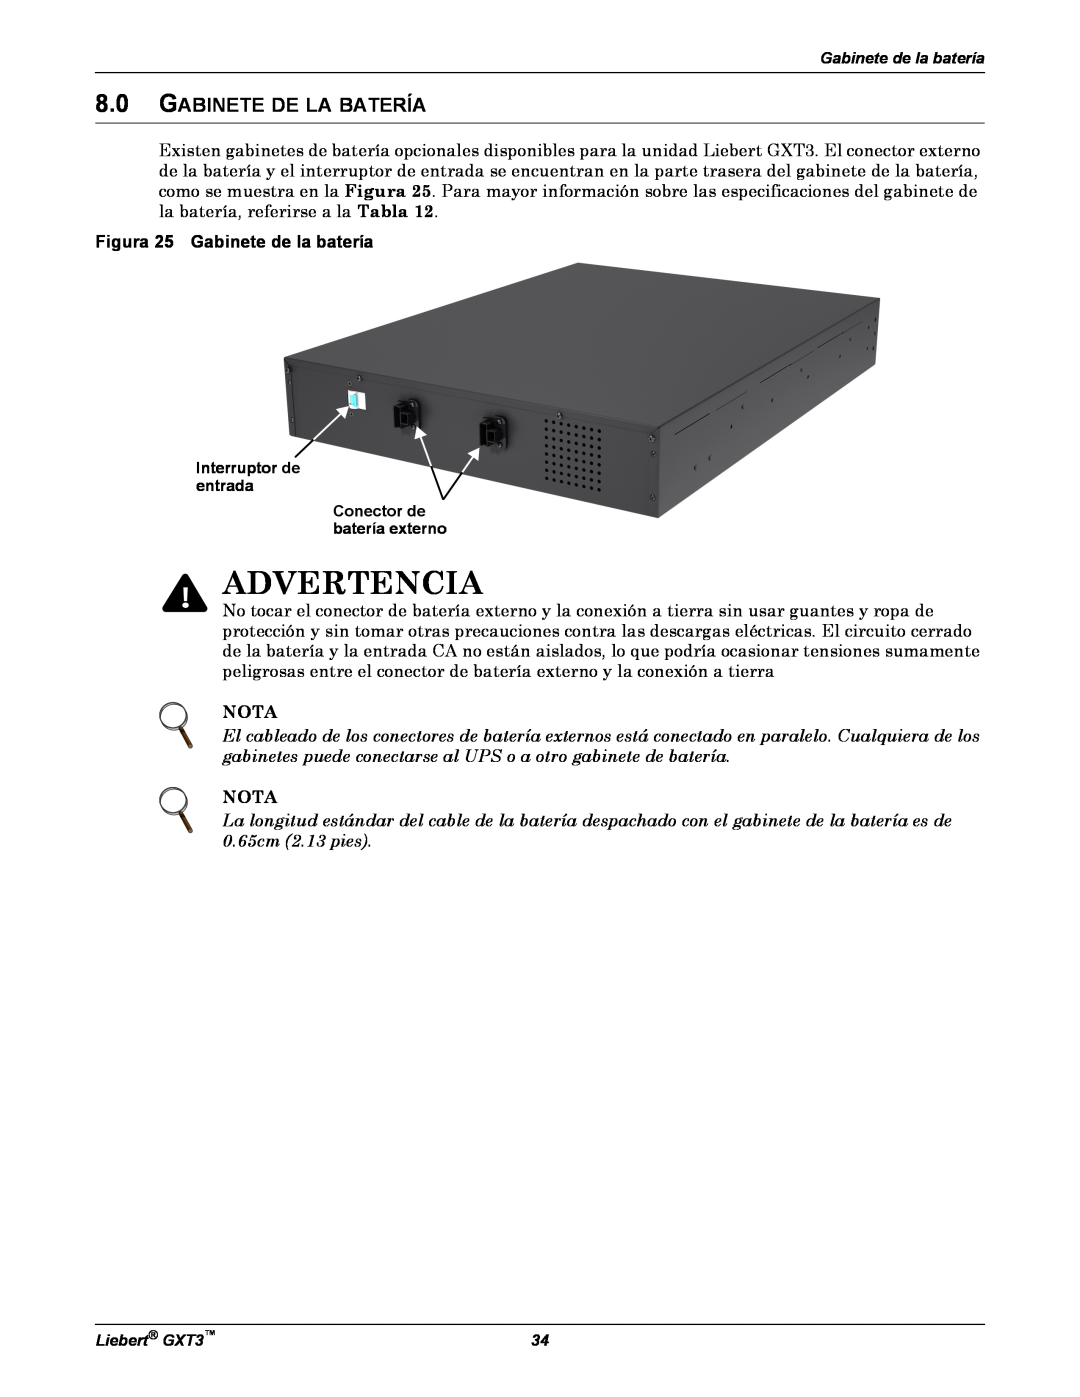 Emerson GXT3 manual Gabinete De La Batería, Advertencia, Figura 25 Gabinete de la batería, Nota 